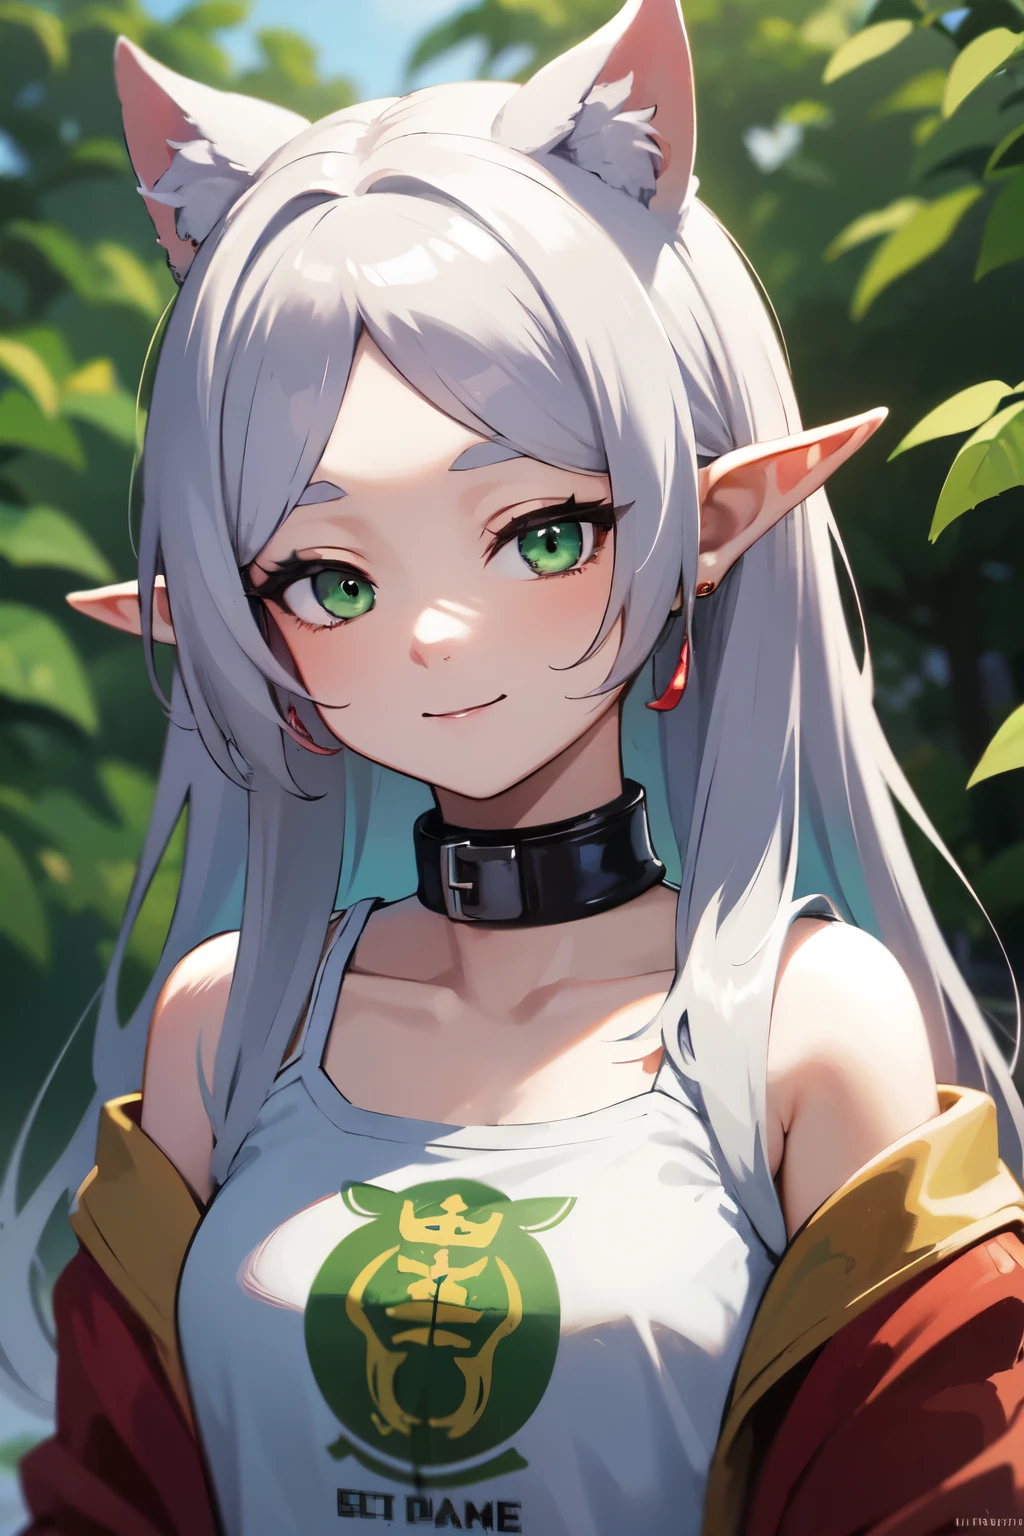 ((mejor calidad)), ((obra maestra)), (detallado), cara perfecta. niña asiatica. Cabello plateado. ojos verdes. orejas de elfo. sonrisa. camiseta.